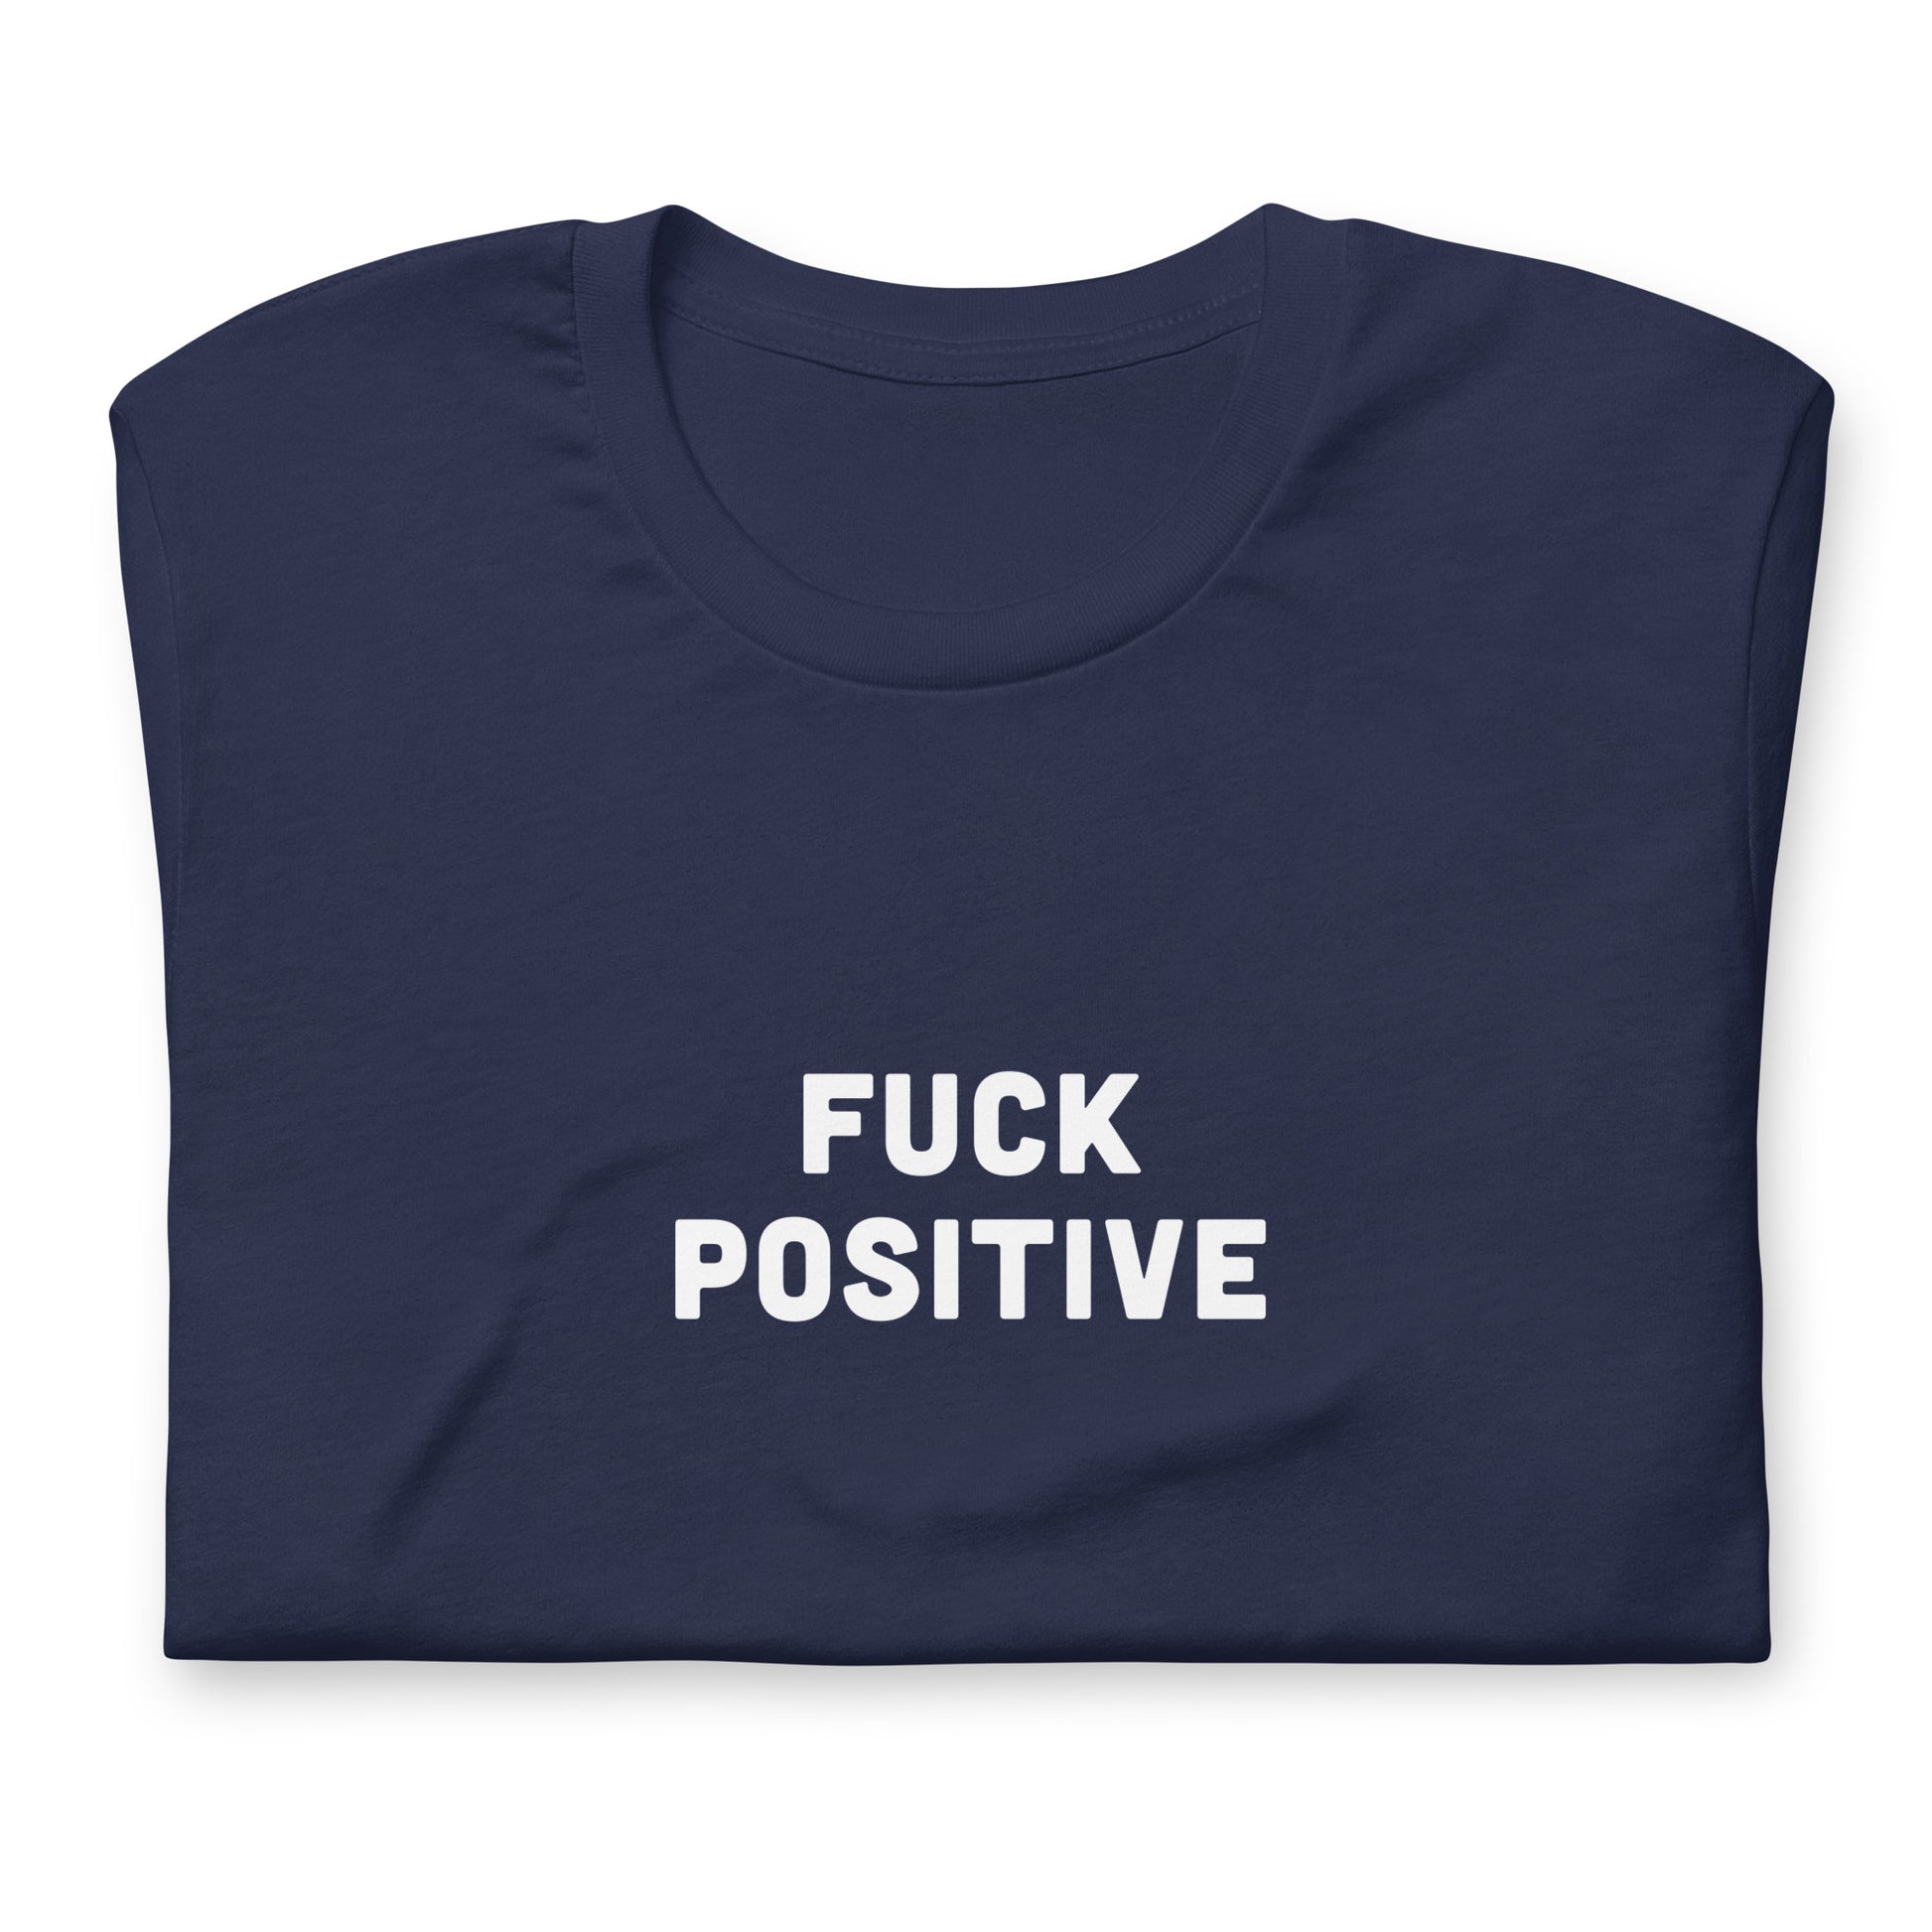 Fuck Positive T-Shirt Size L Color Black